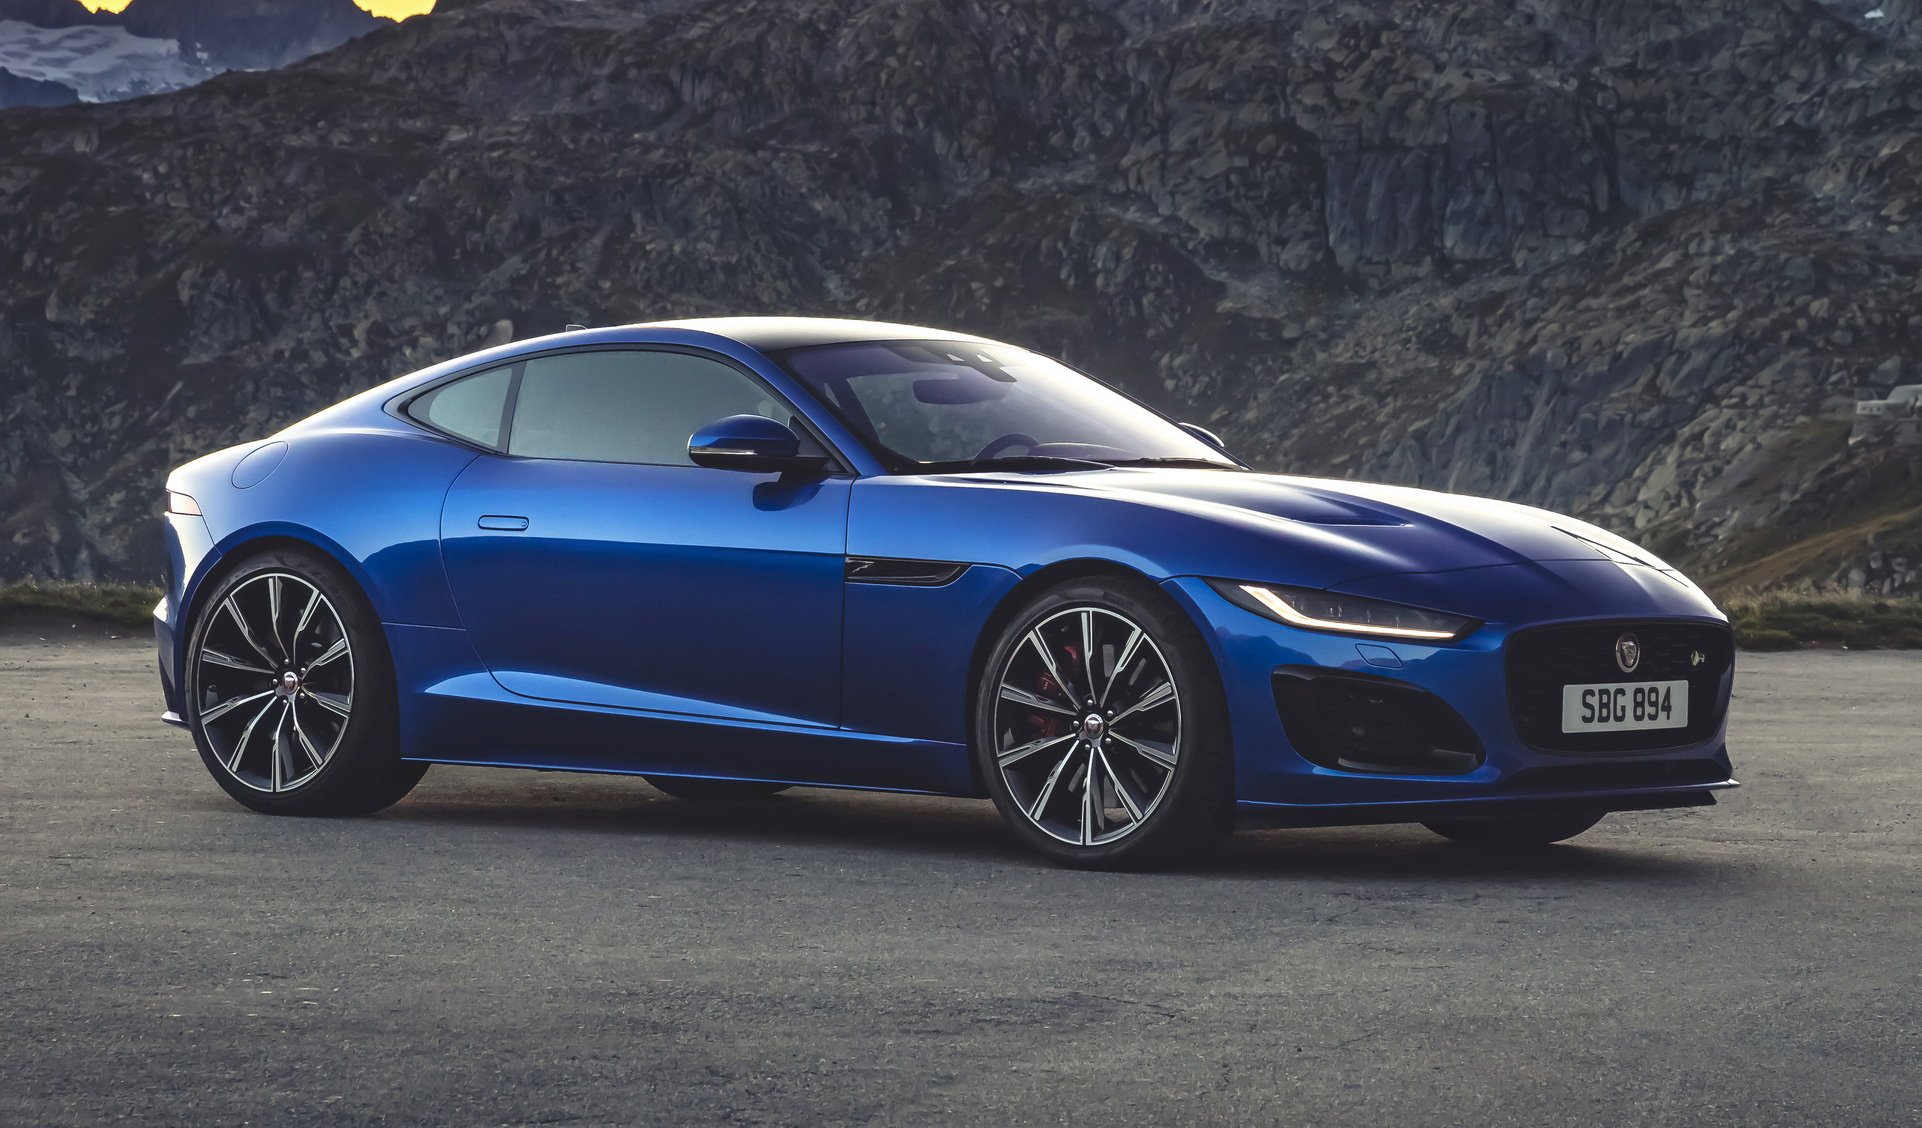 2020 Jaguar F-Type, daha agresif tasarımı ve yeni teknolojileriyle tanıtıldı